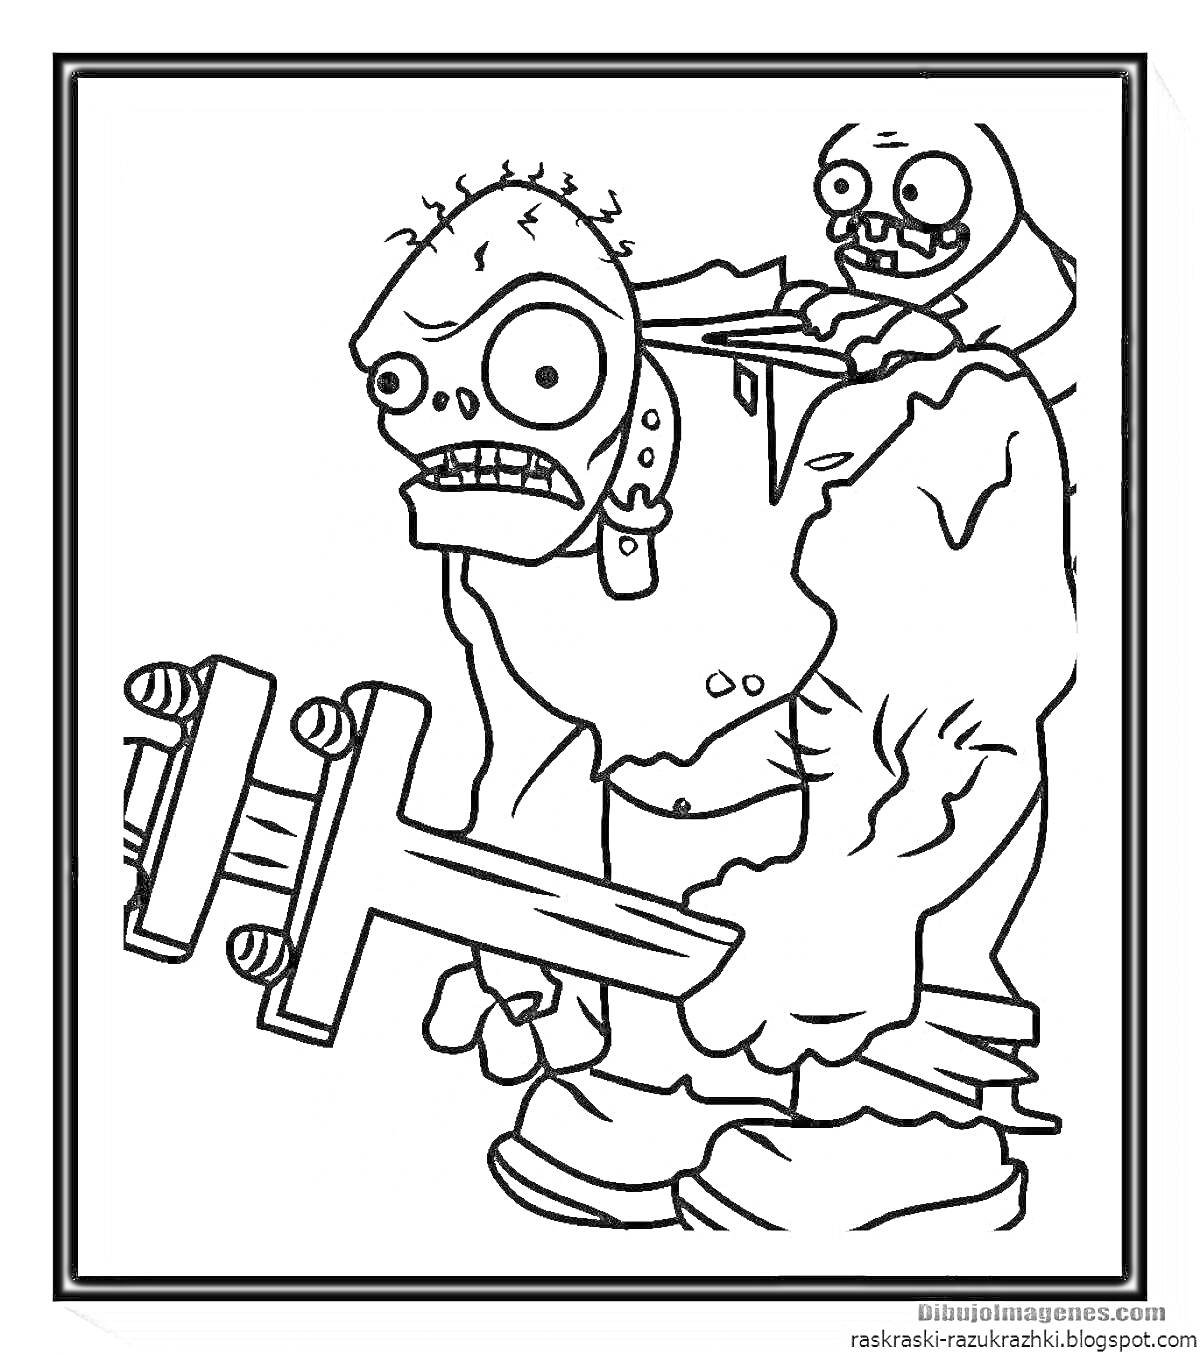 Раскраска Огромный зомби с деревянным молотом и маленький зомби на его спине